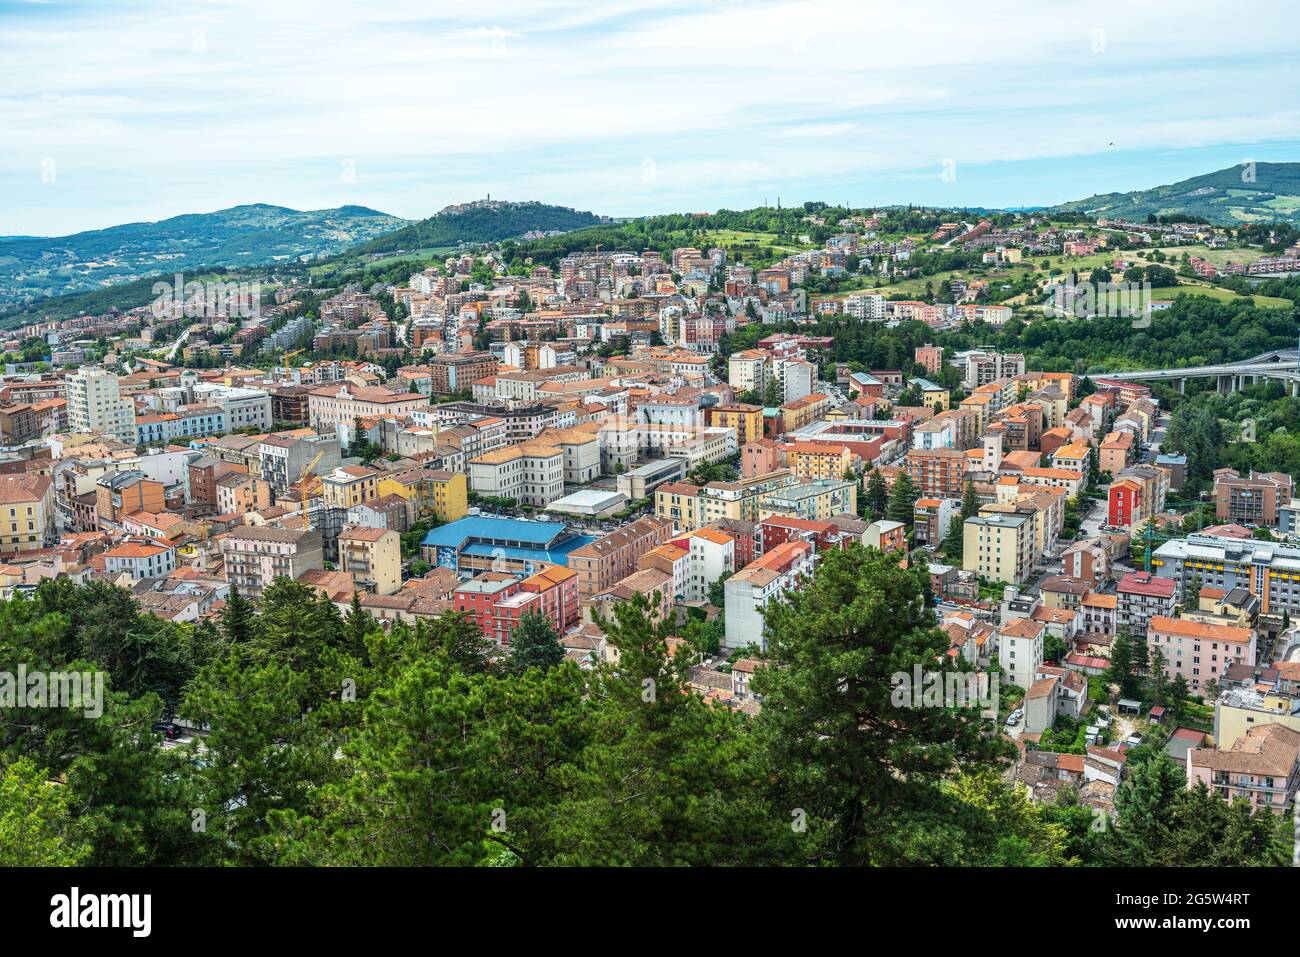 Vista dall'alto della città di Campobasso, capoluogo della provincia del Molise. Molise, Italia, Europa Foto Stock